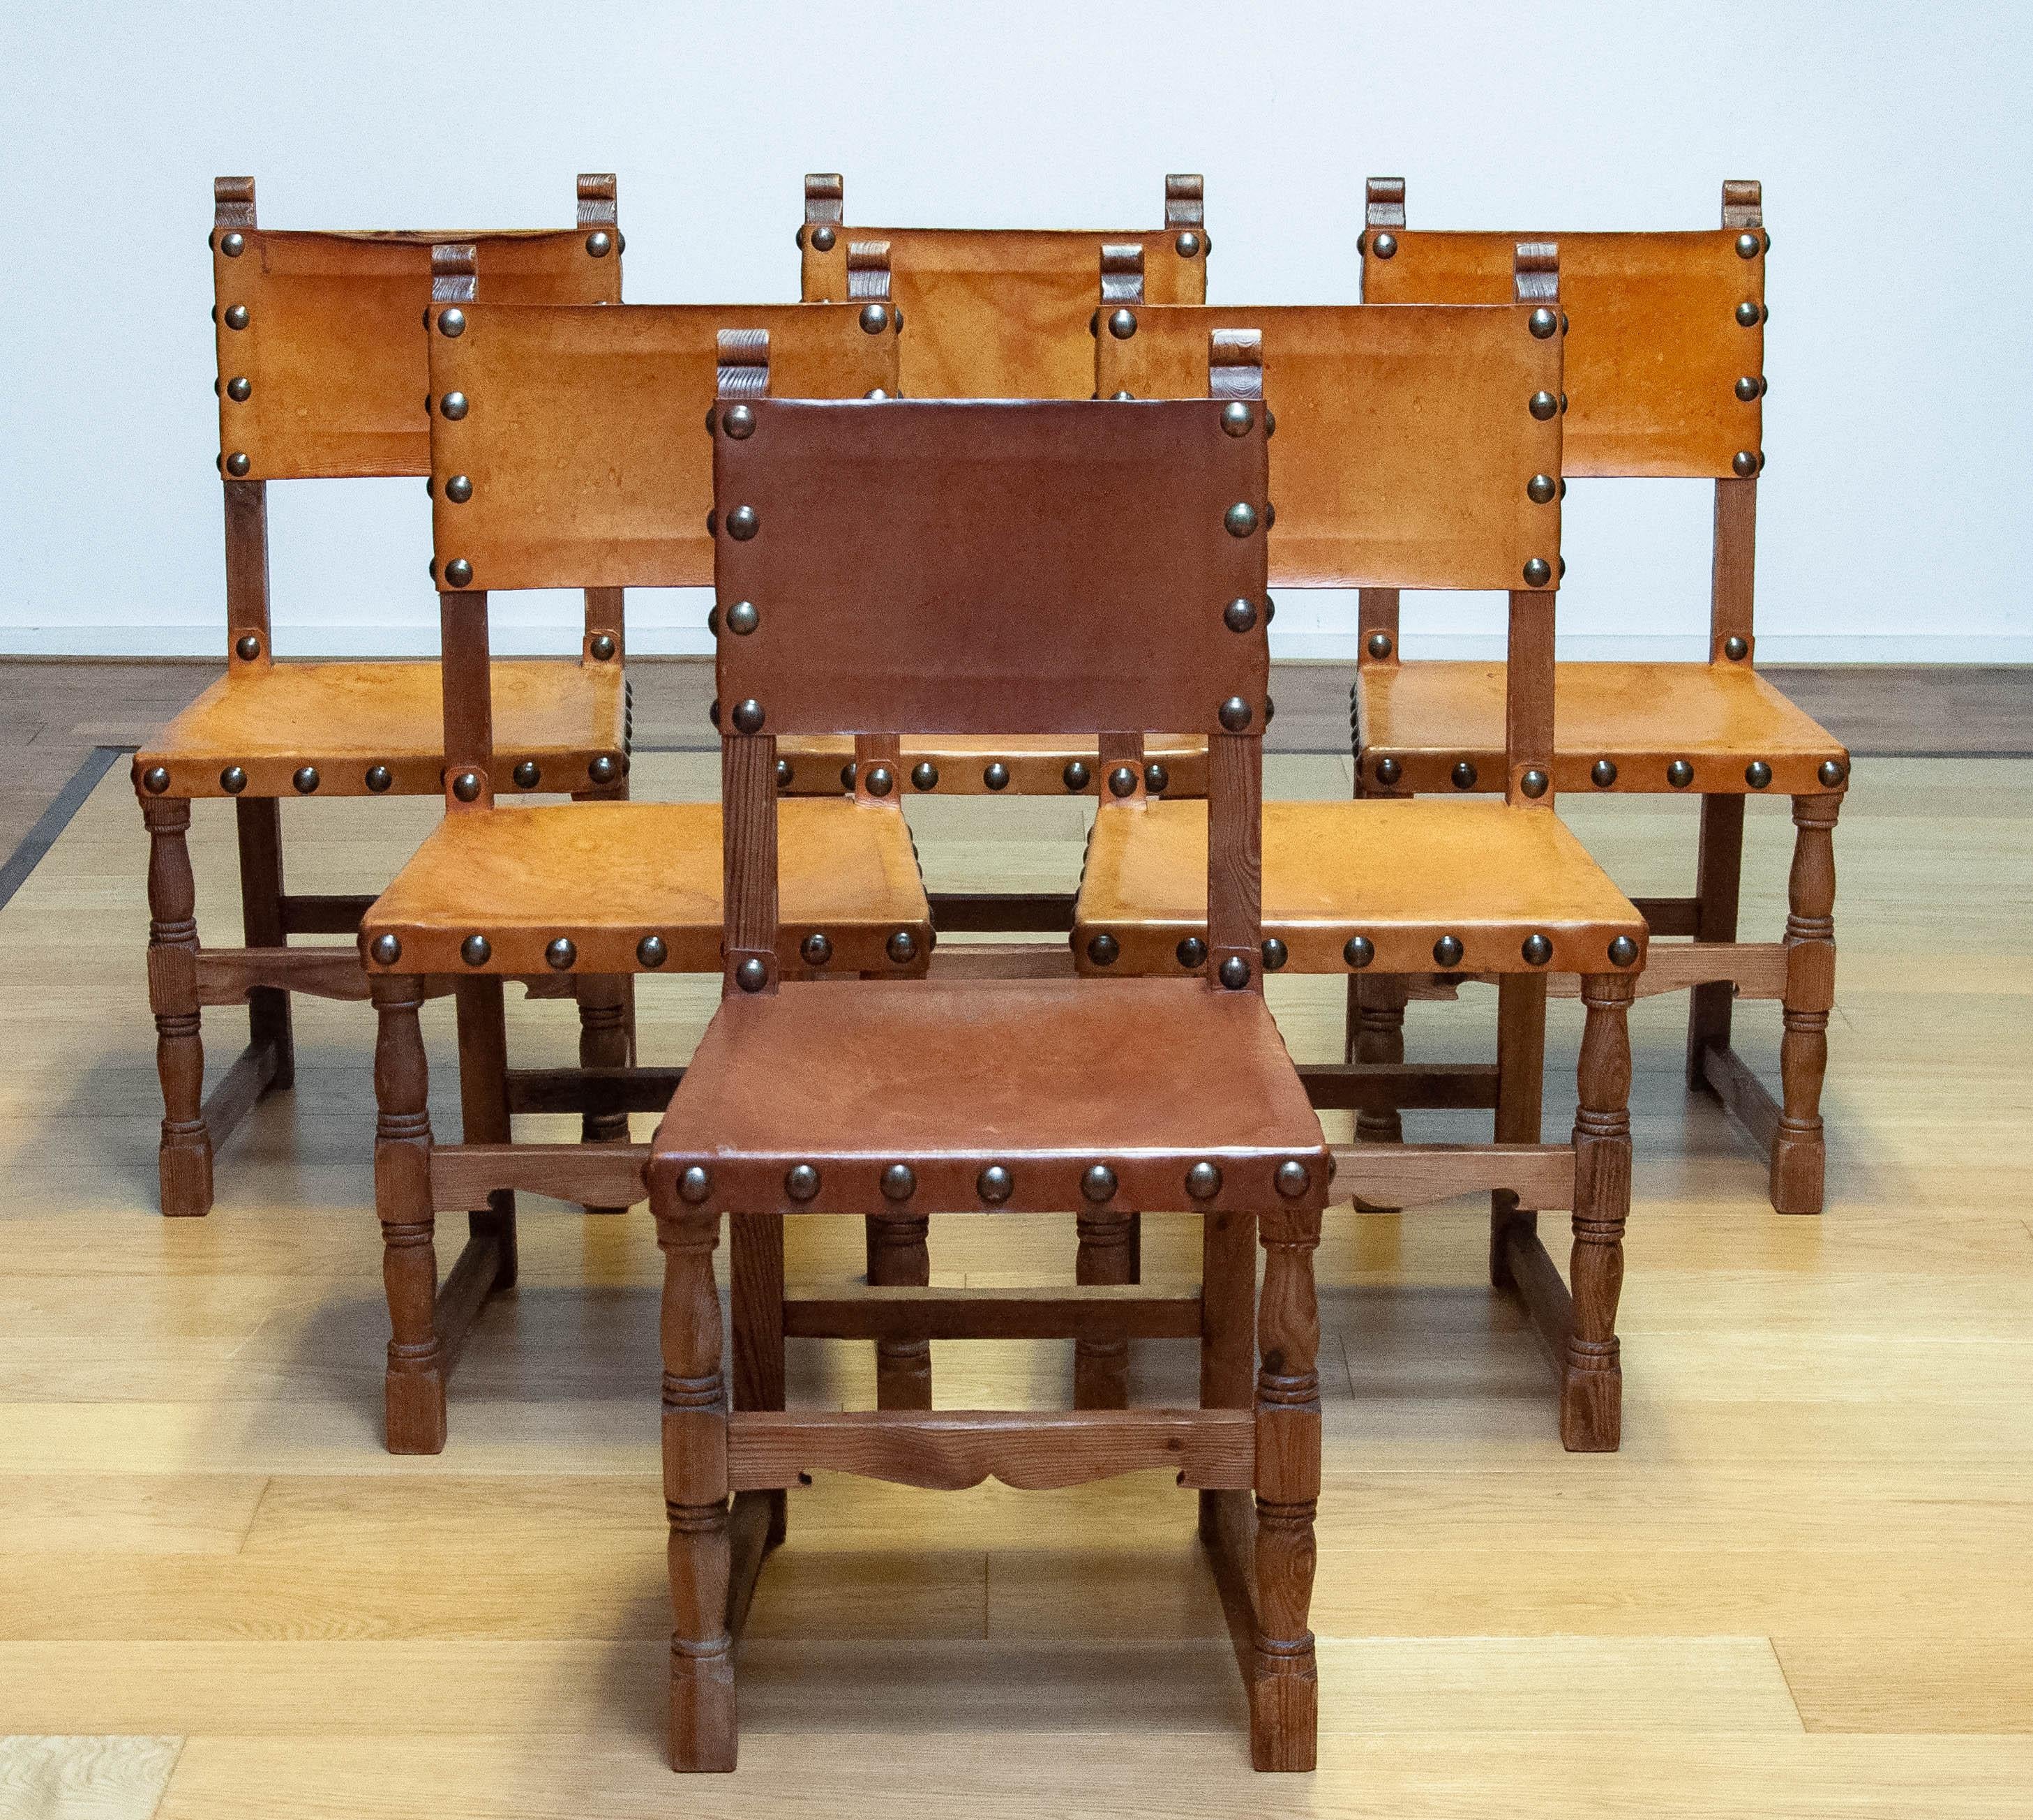 Absolut schöner Satz von sechs schwedischen 'Folk Art' Landhausstühlen des späten 19. Jahrhunderts aus Kiefer mit robustem hellbraunem Leder.
Die Maße der Stühle sind: Höhe der Rückenlehne 94 cm / 37 Zoll - Sitzhöhe ist 46 cm / 18,11 Zoll - Breite